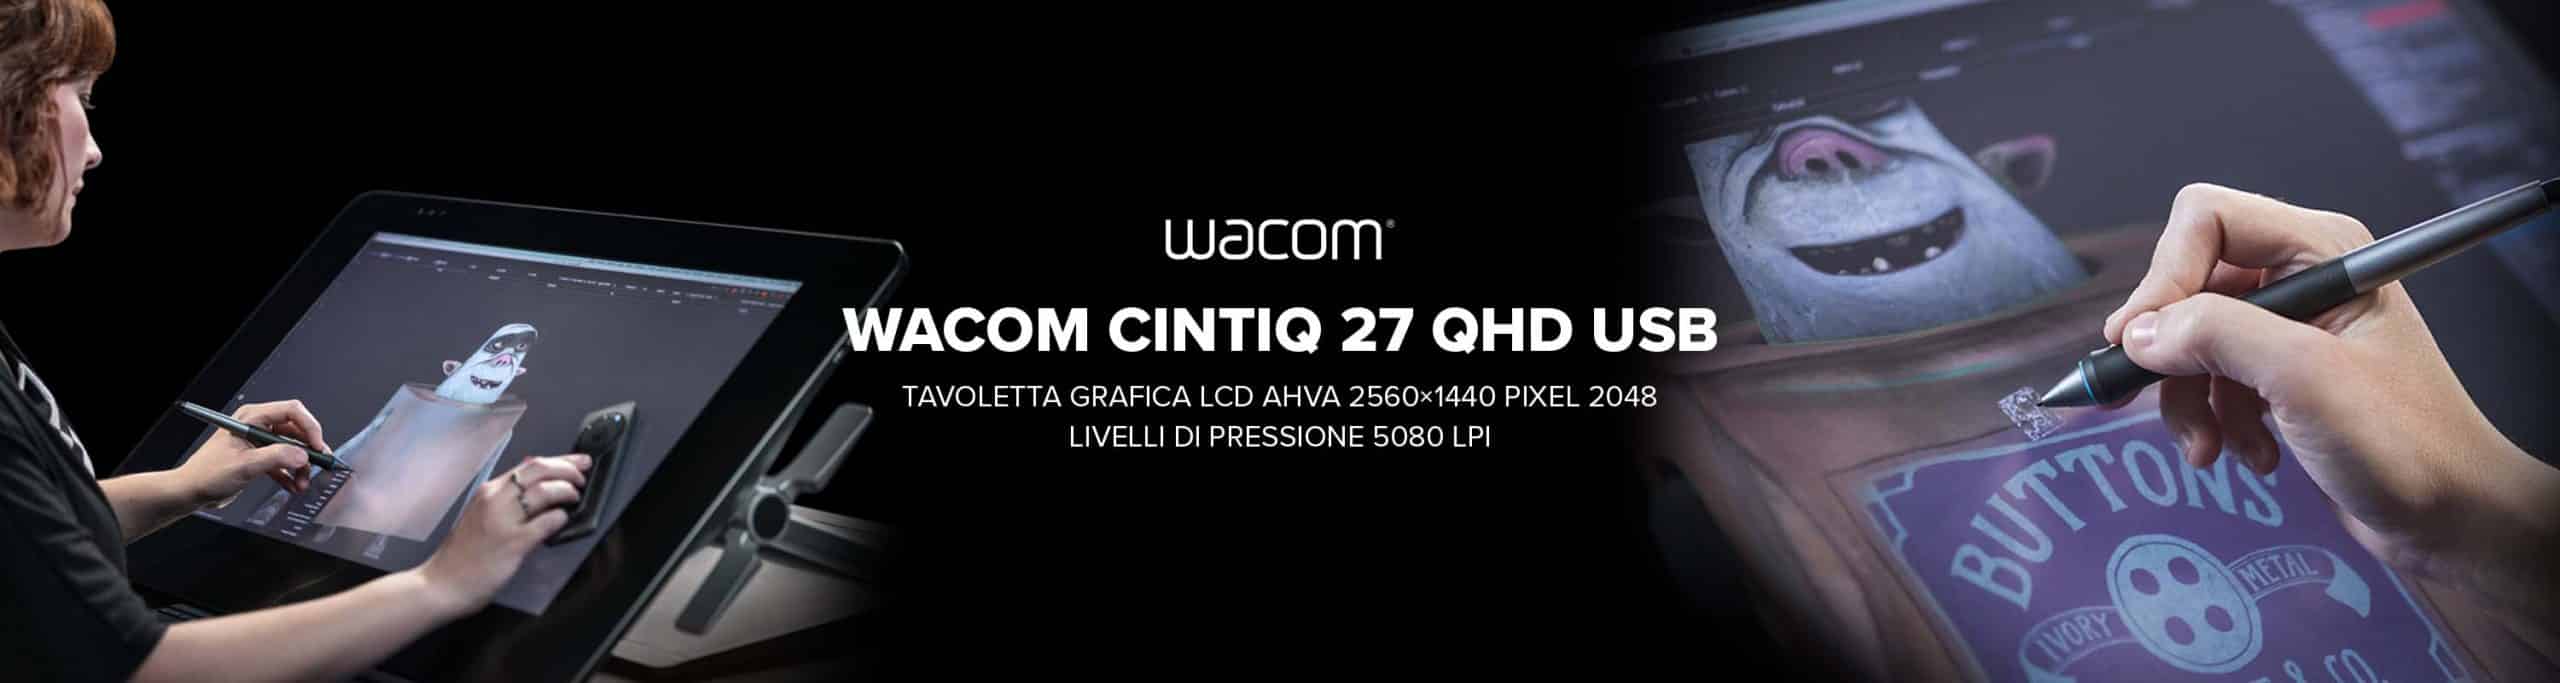 Wacom Cintiq 27